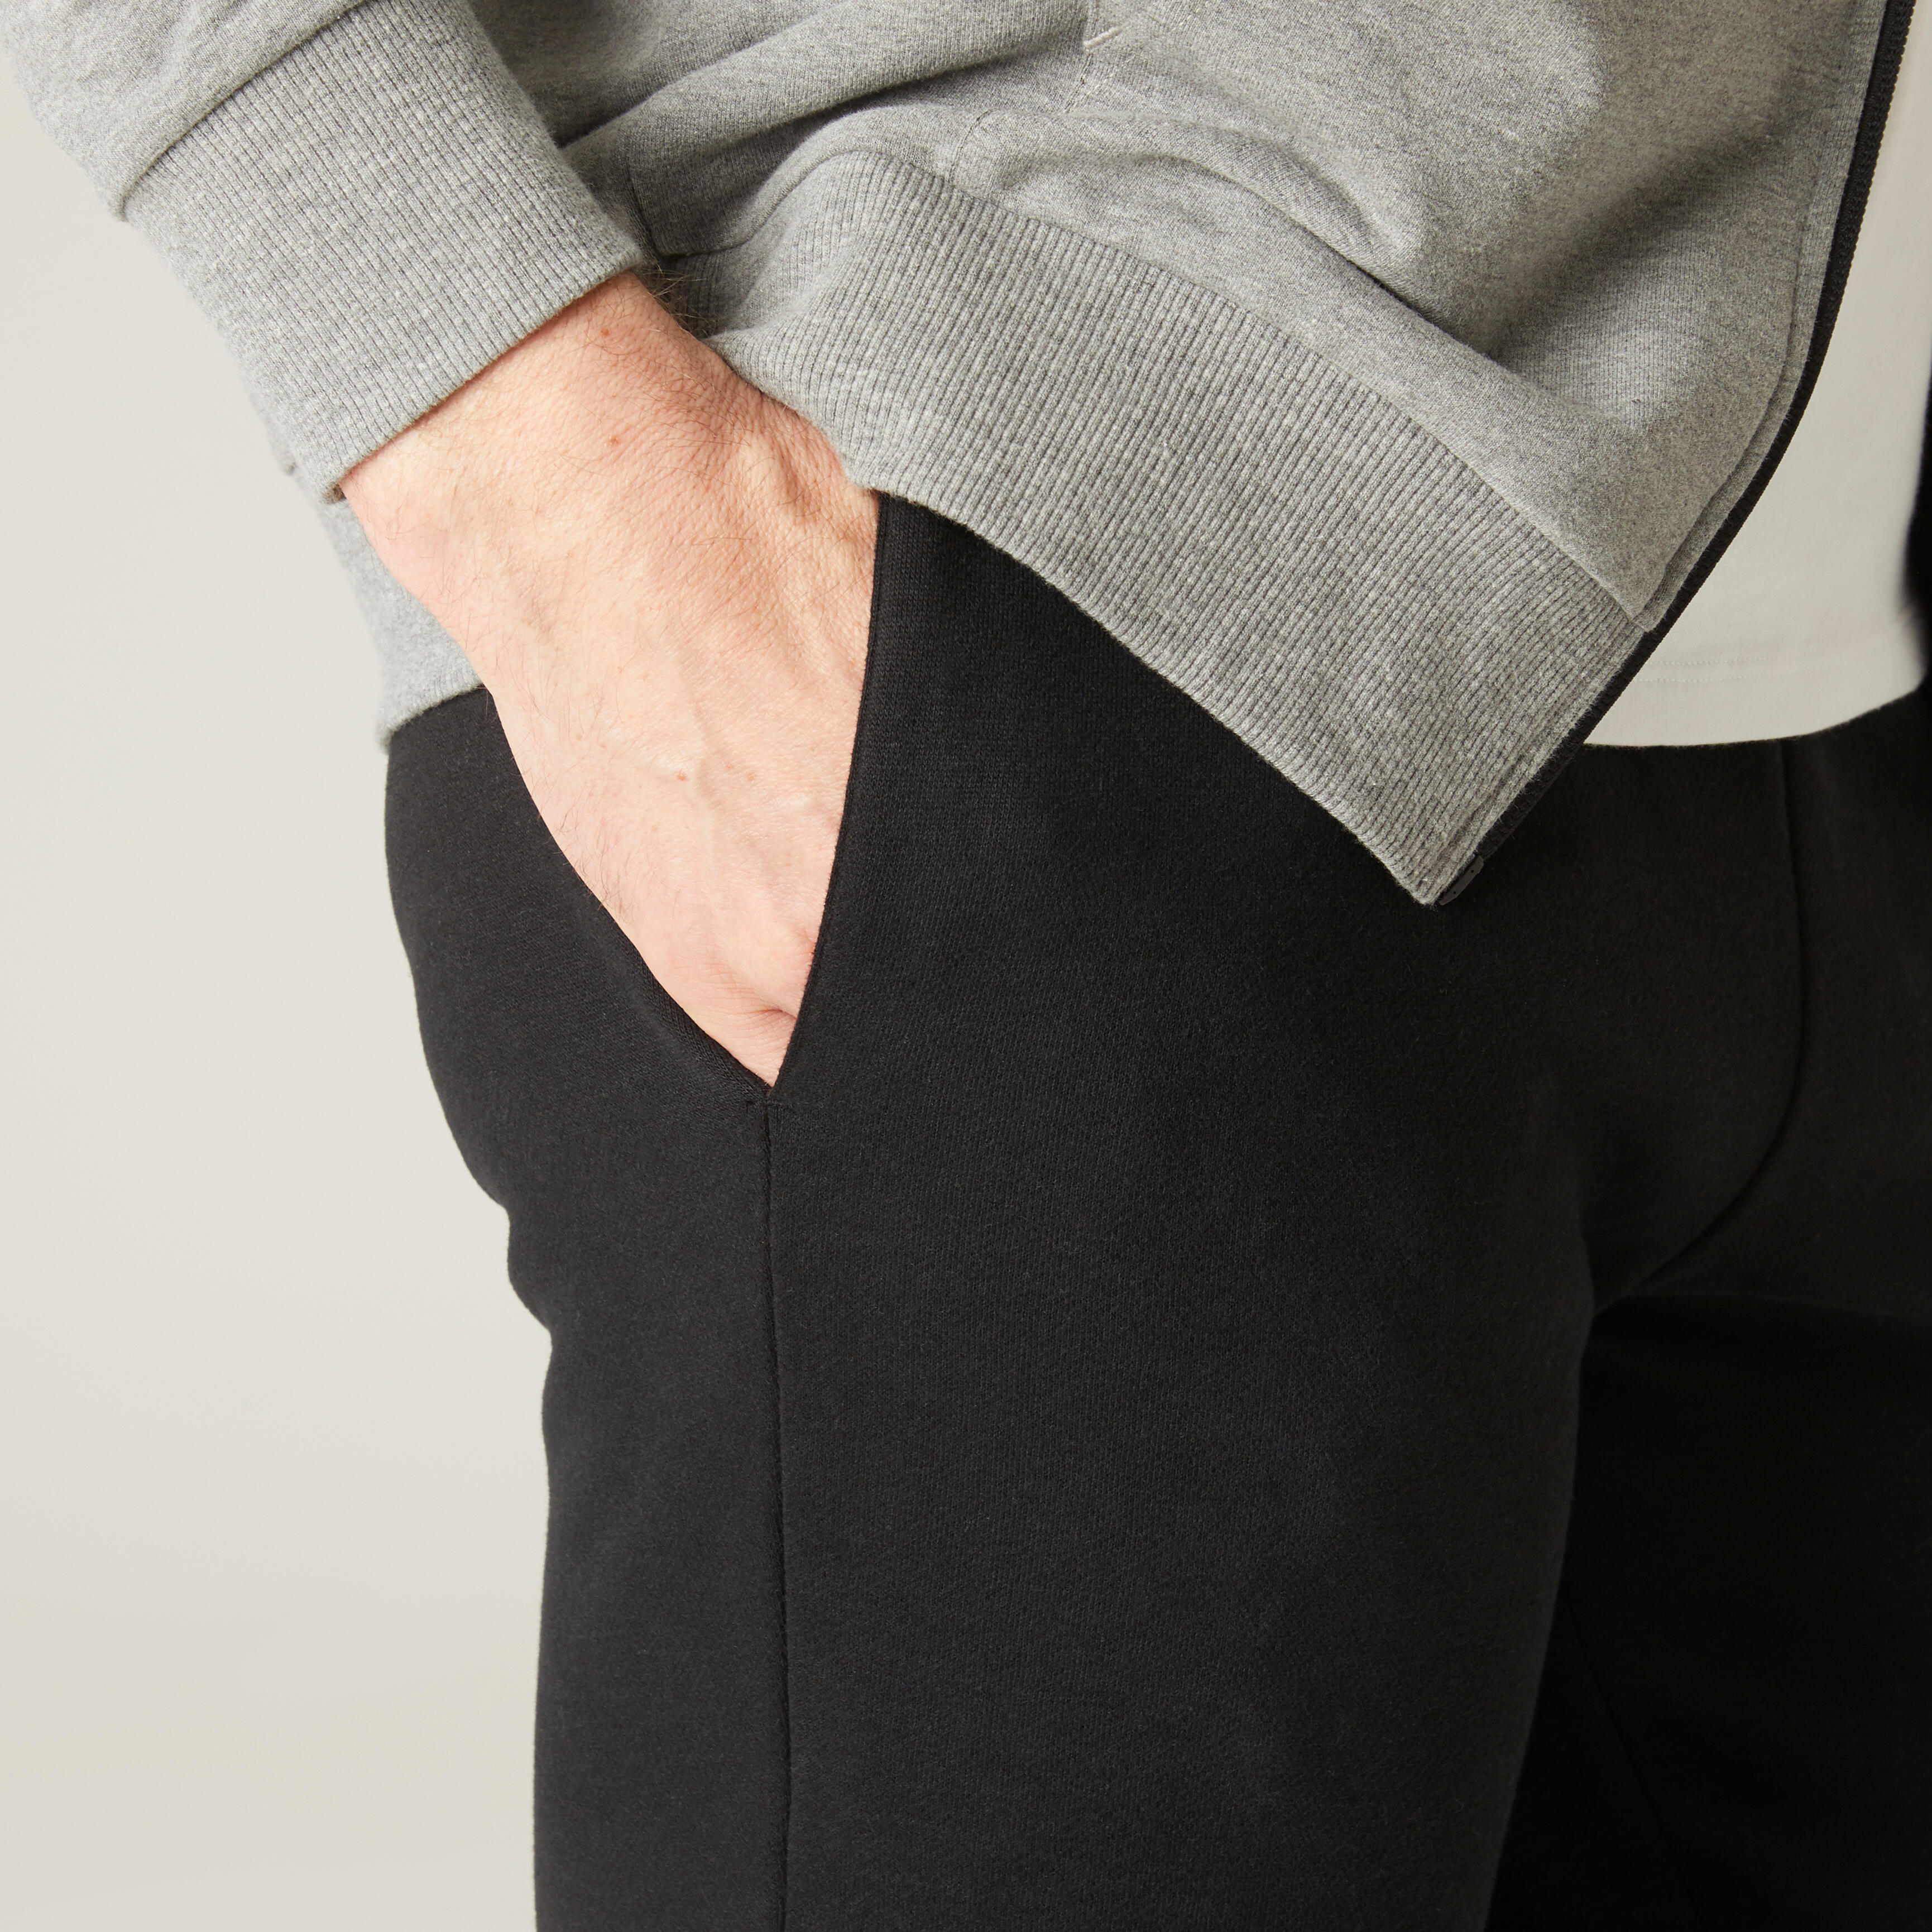 Pantalon de sport chaud homme - 100 noir - DOMYOS